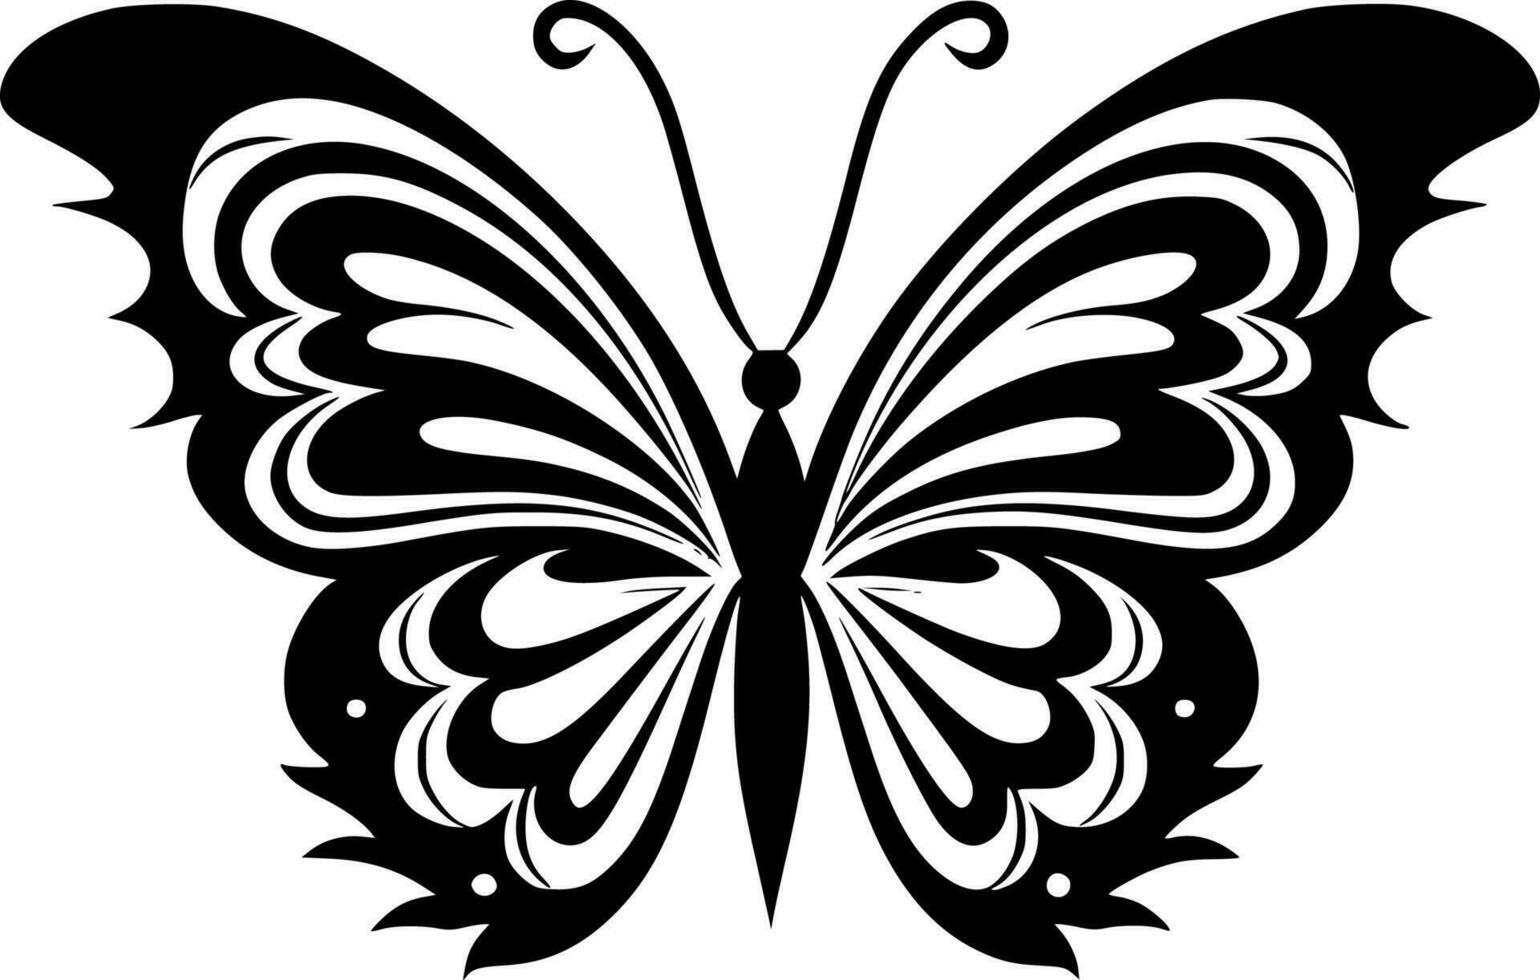 Schmetterling, minimalistisch und einfach Silhouette - - Vektor Illustration